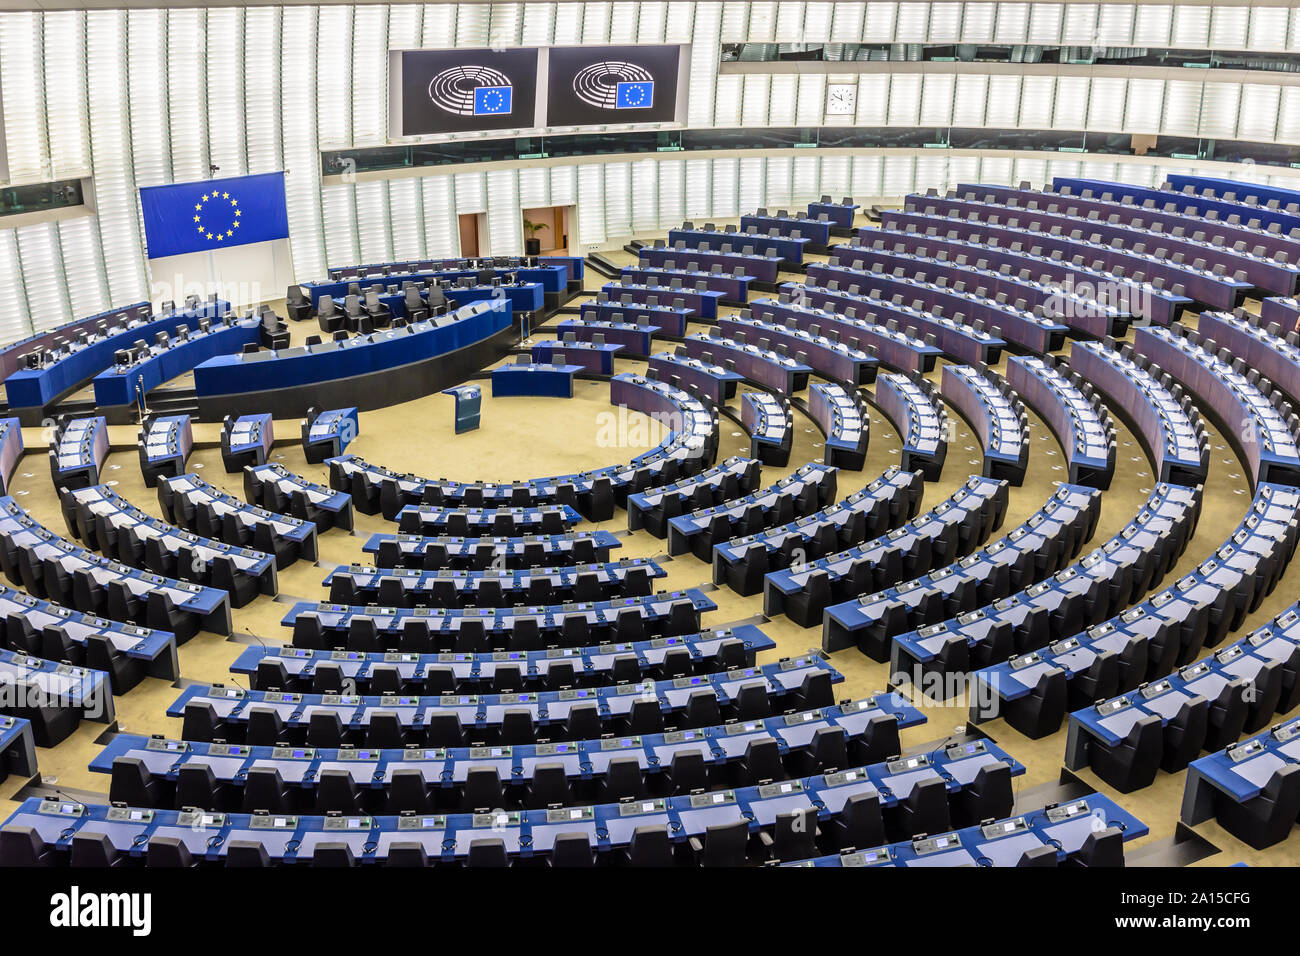 Allgemeine Ansicht der Plenarsaal des Europäischen Parlaments in Brüssel, Belgien, mit der Flagge der Europäischen Union über dem Schreibtisch des Präsidenten. Stockfoto